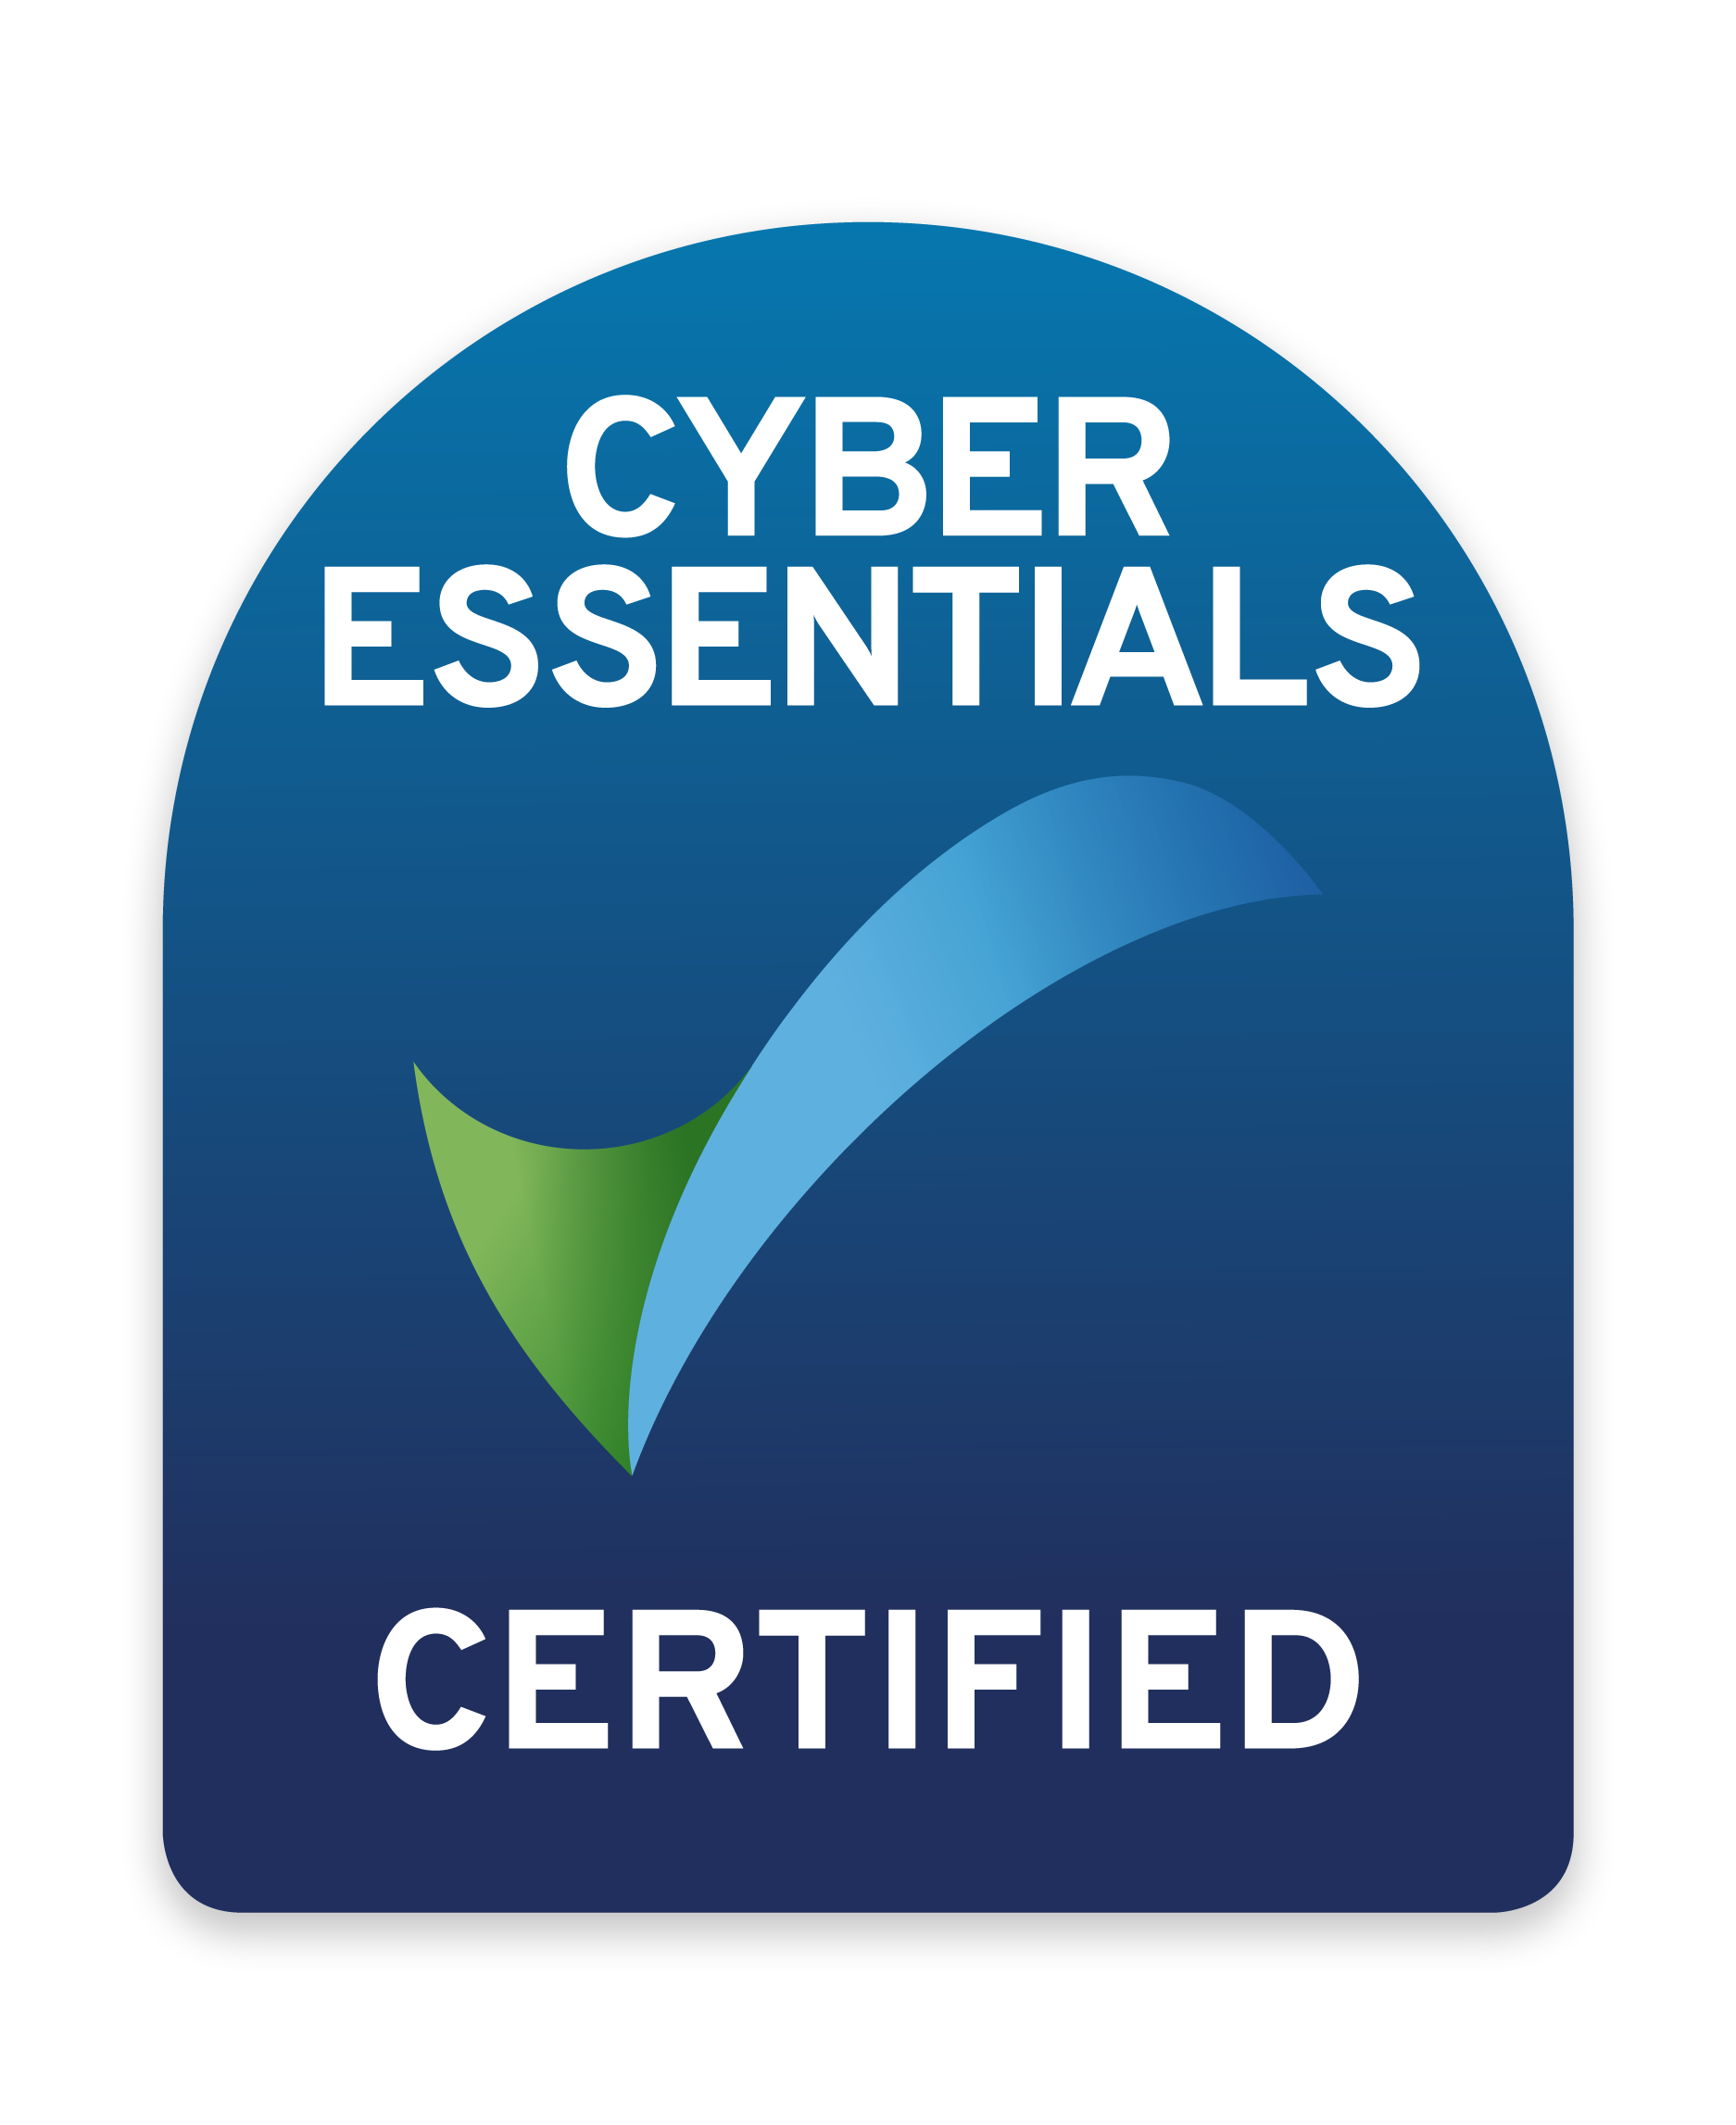 IMSM Philippines Cyber Essentials Certification